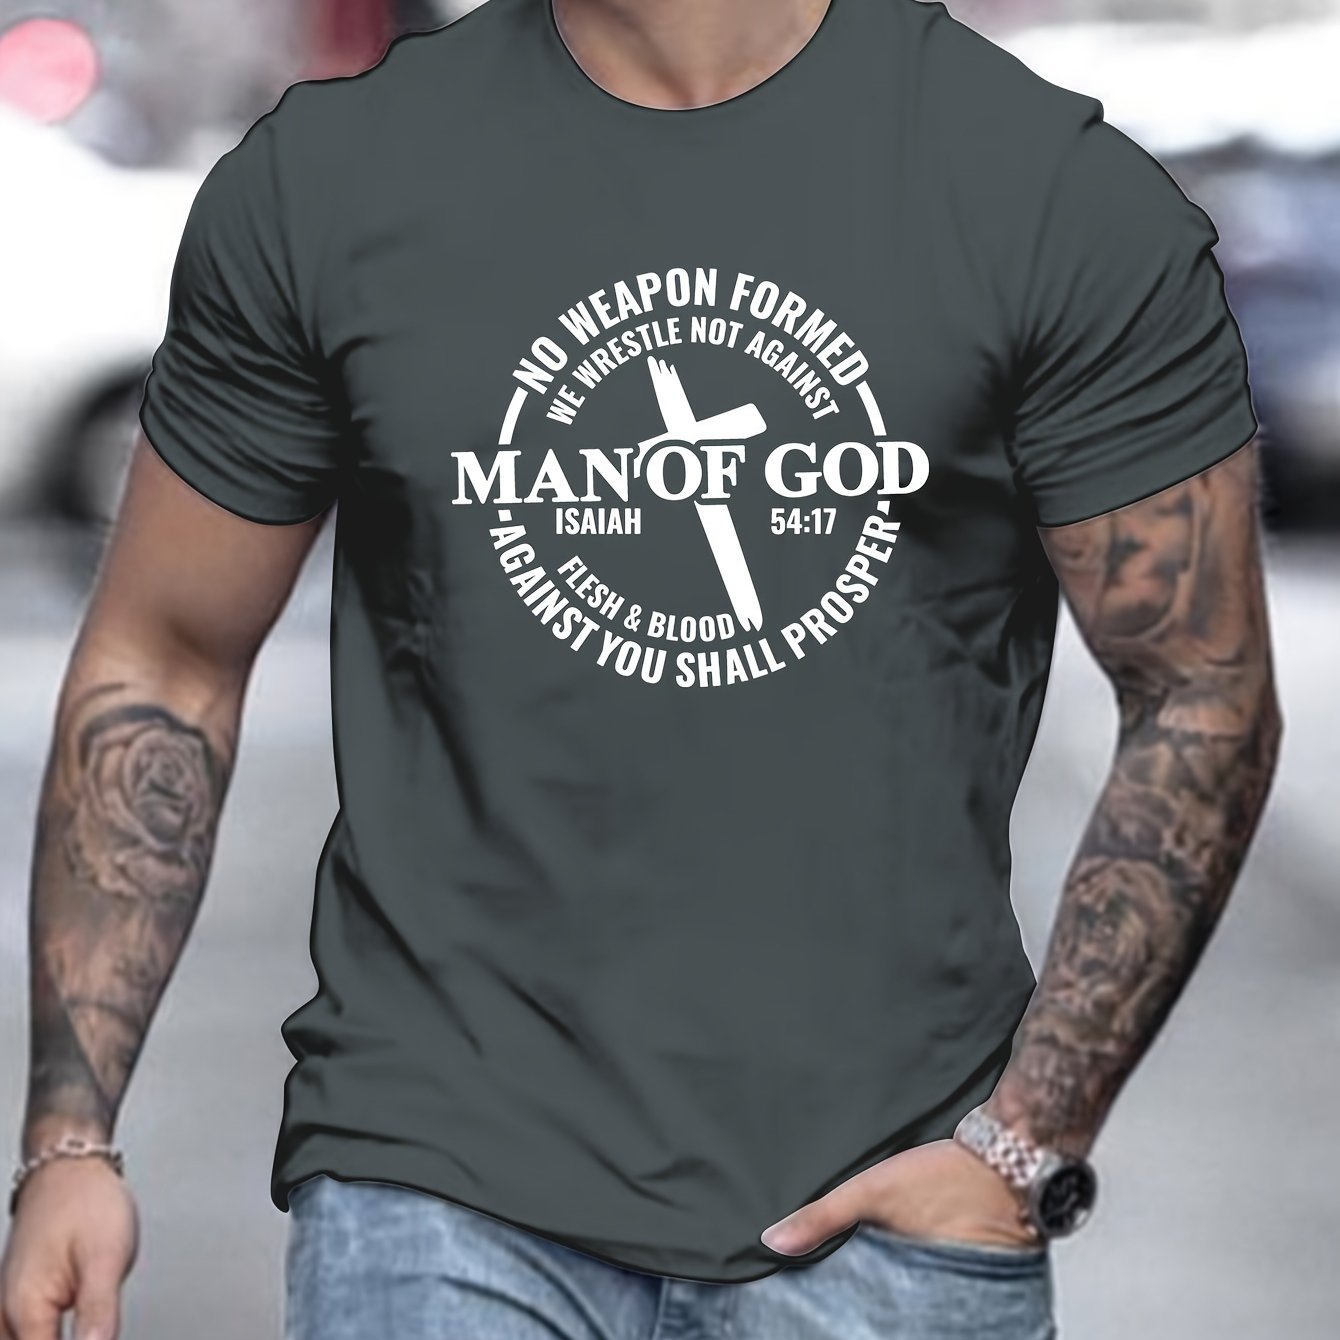 Man Of God Men's Christian T-shirt claimedbygoddesigns